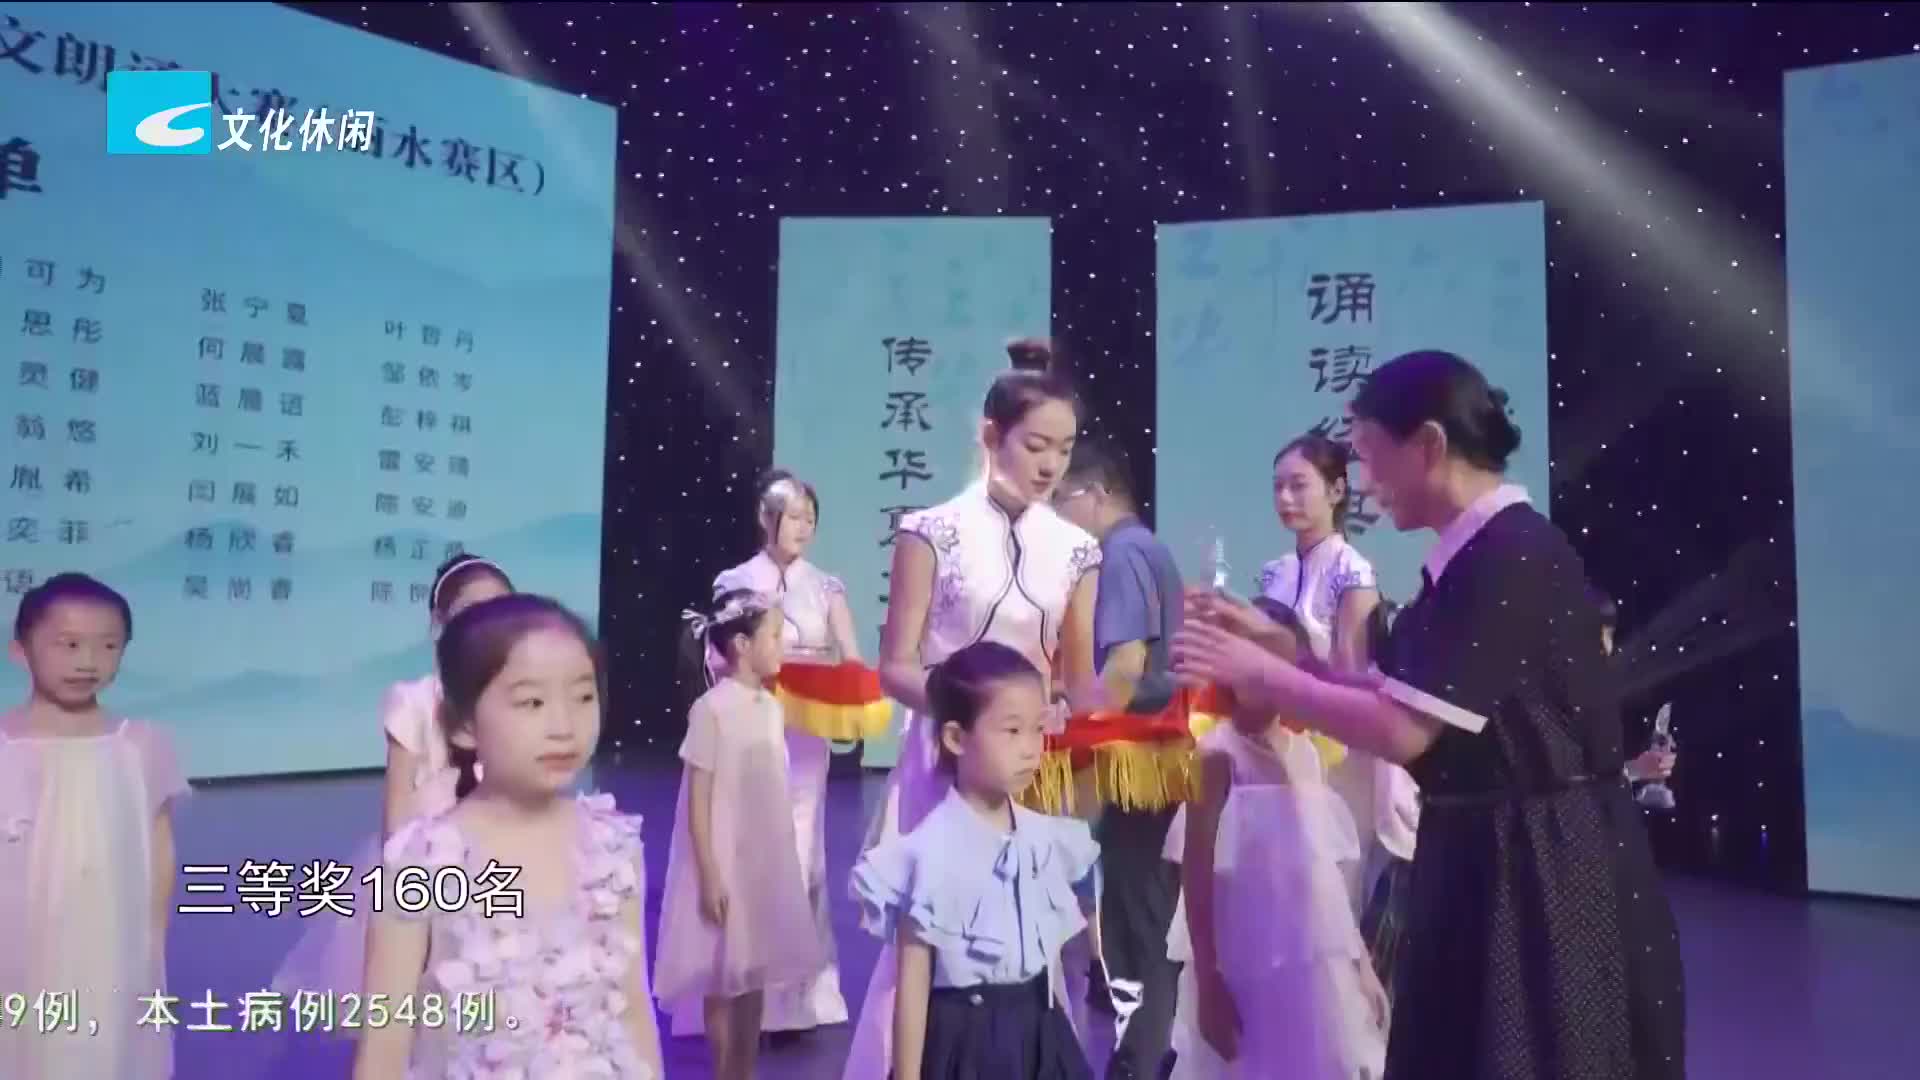 第二届浙江省中小学生课文朗诵大赛丽水赛区颁奖典礼昨晚举行